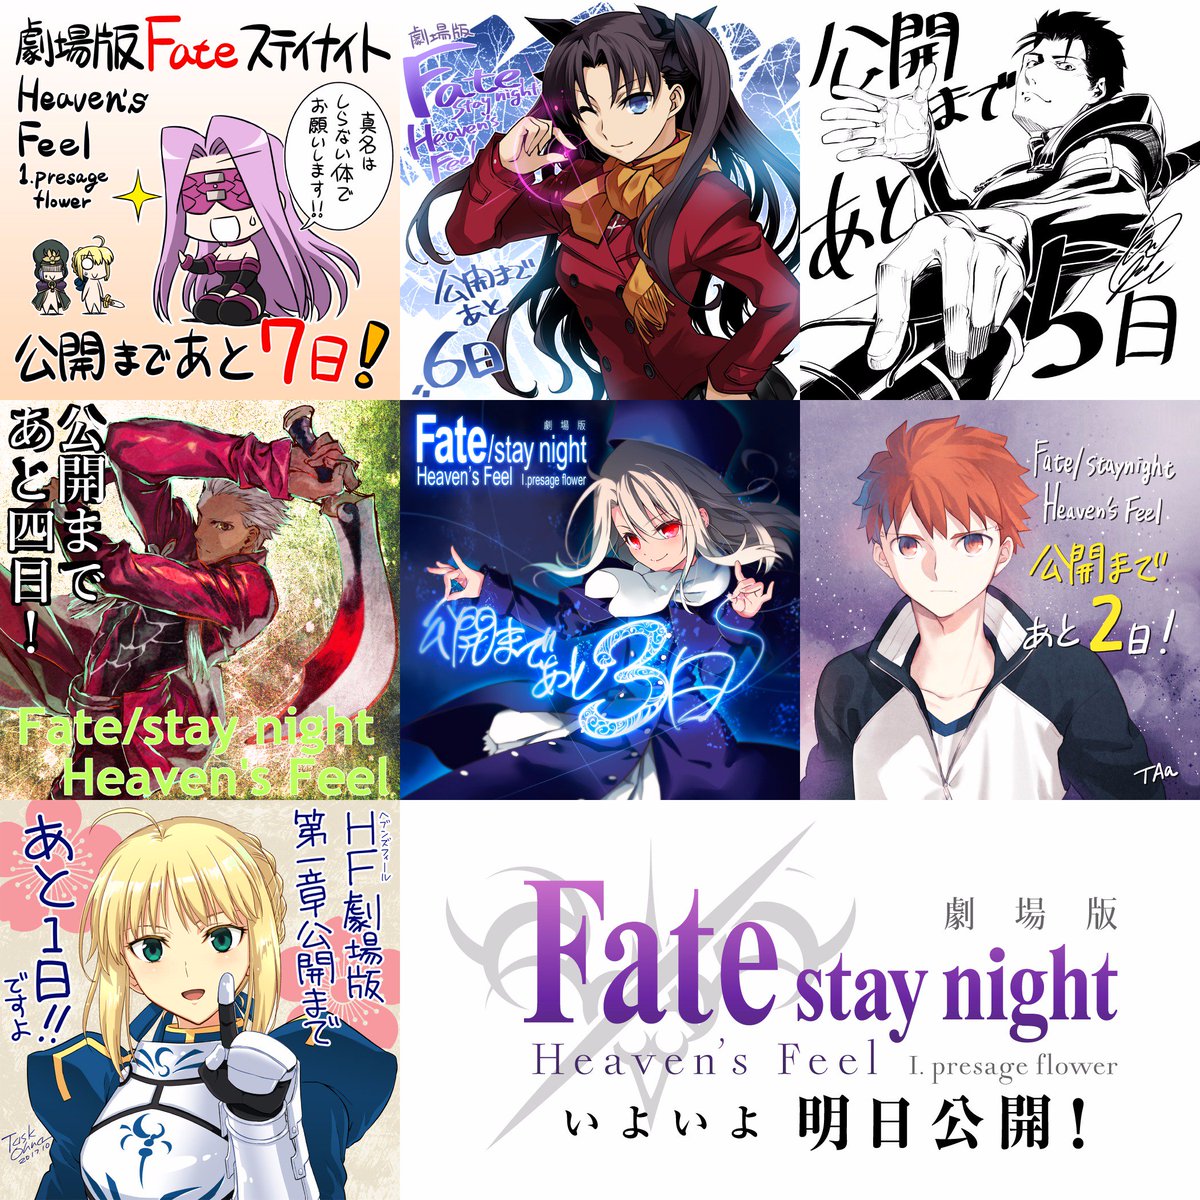 Fate Stay Night カウントダウンイラスト一挙公開 先週より実施をしておりましたカウントダウンイラストを一挙公開致します 明日最終日もお楽しみに Fate Sn Anime T Co Ock4eobxfj Twitter